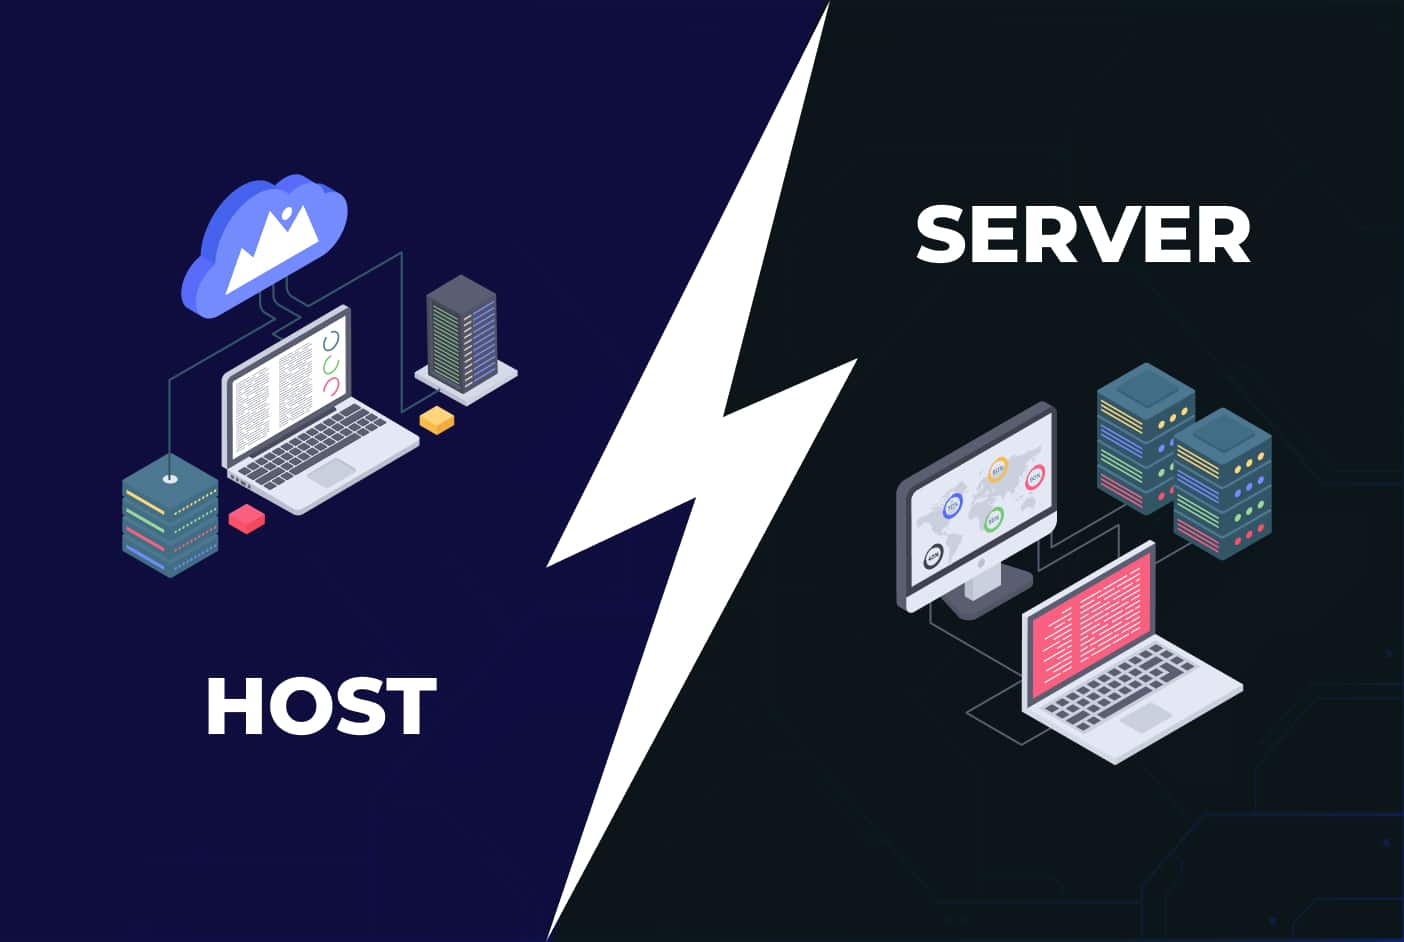 host vs server